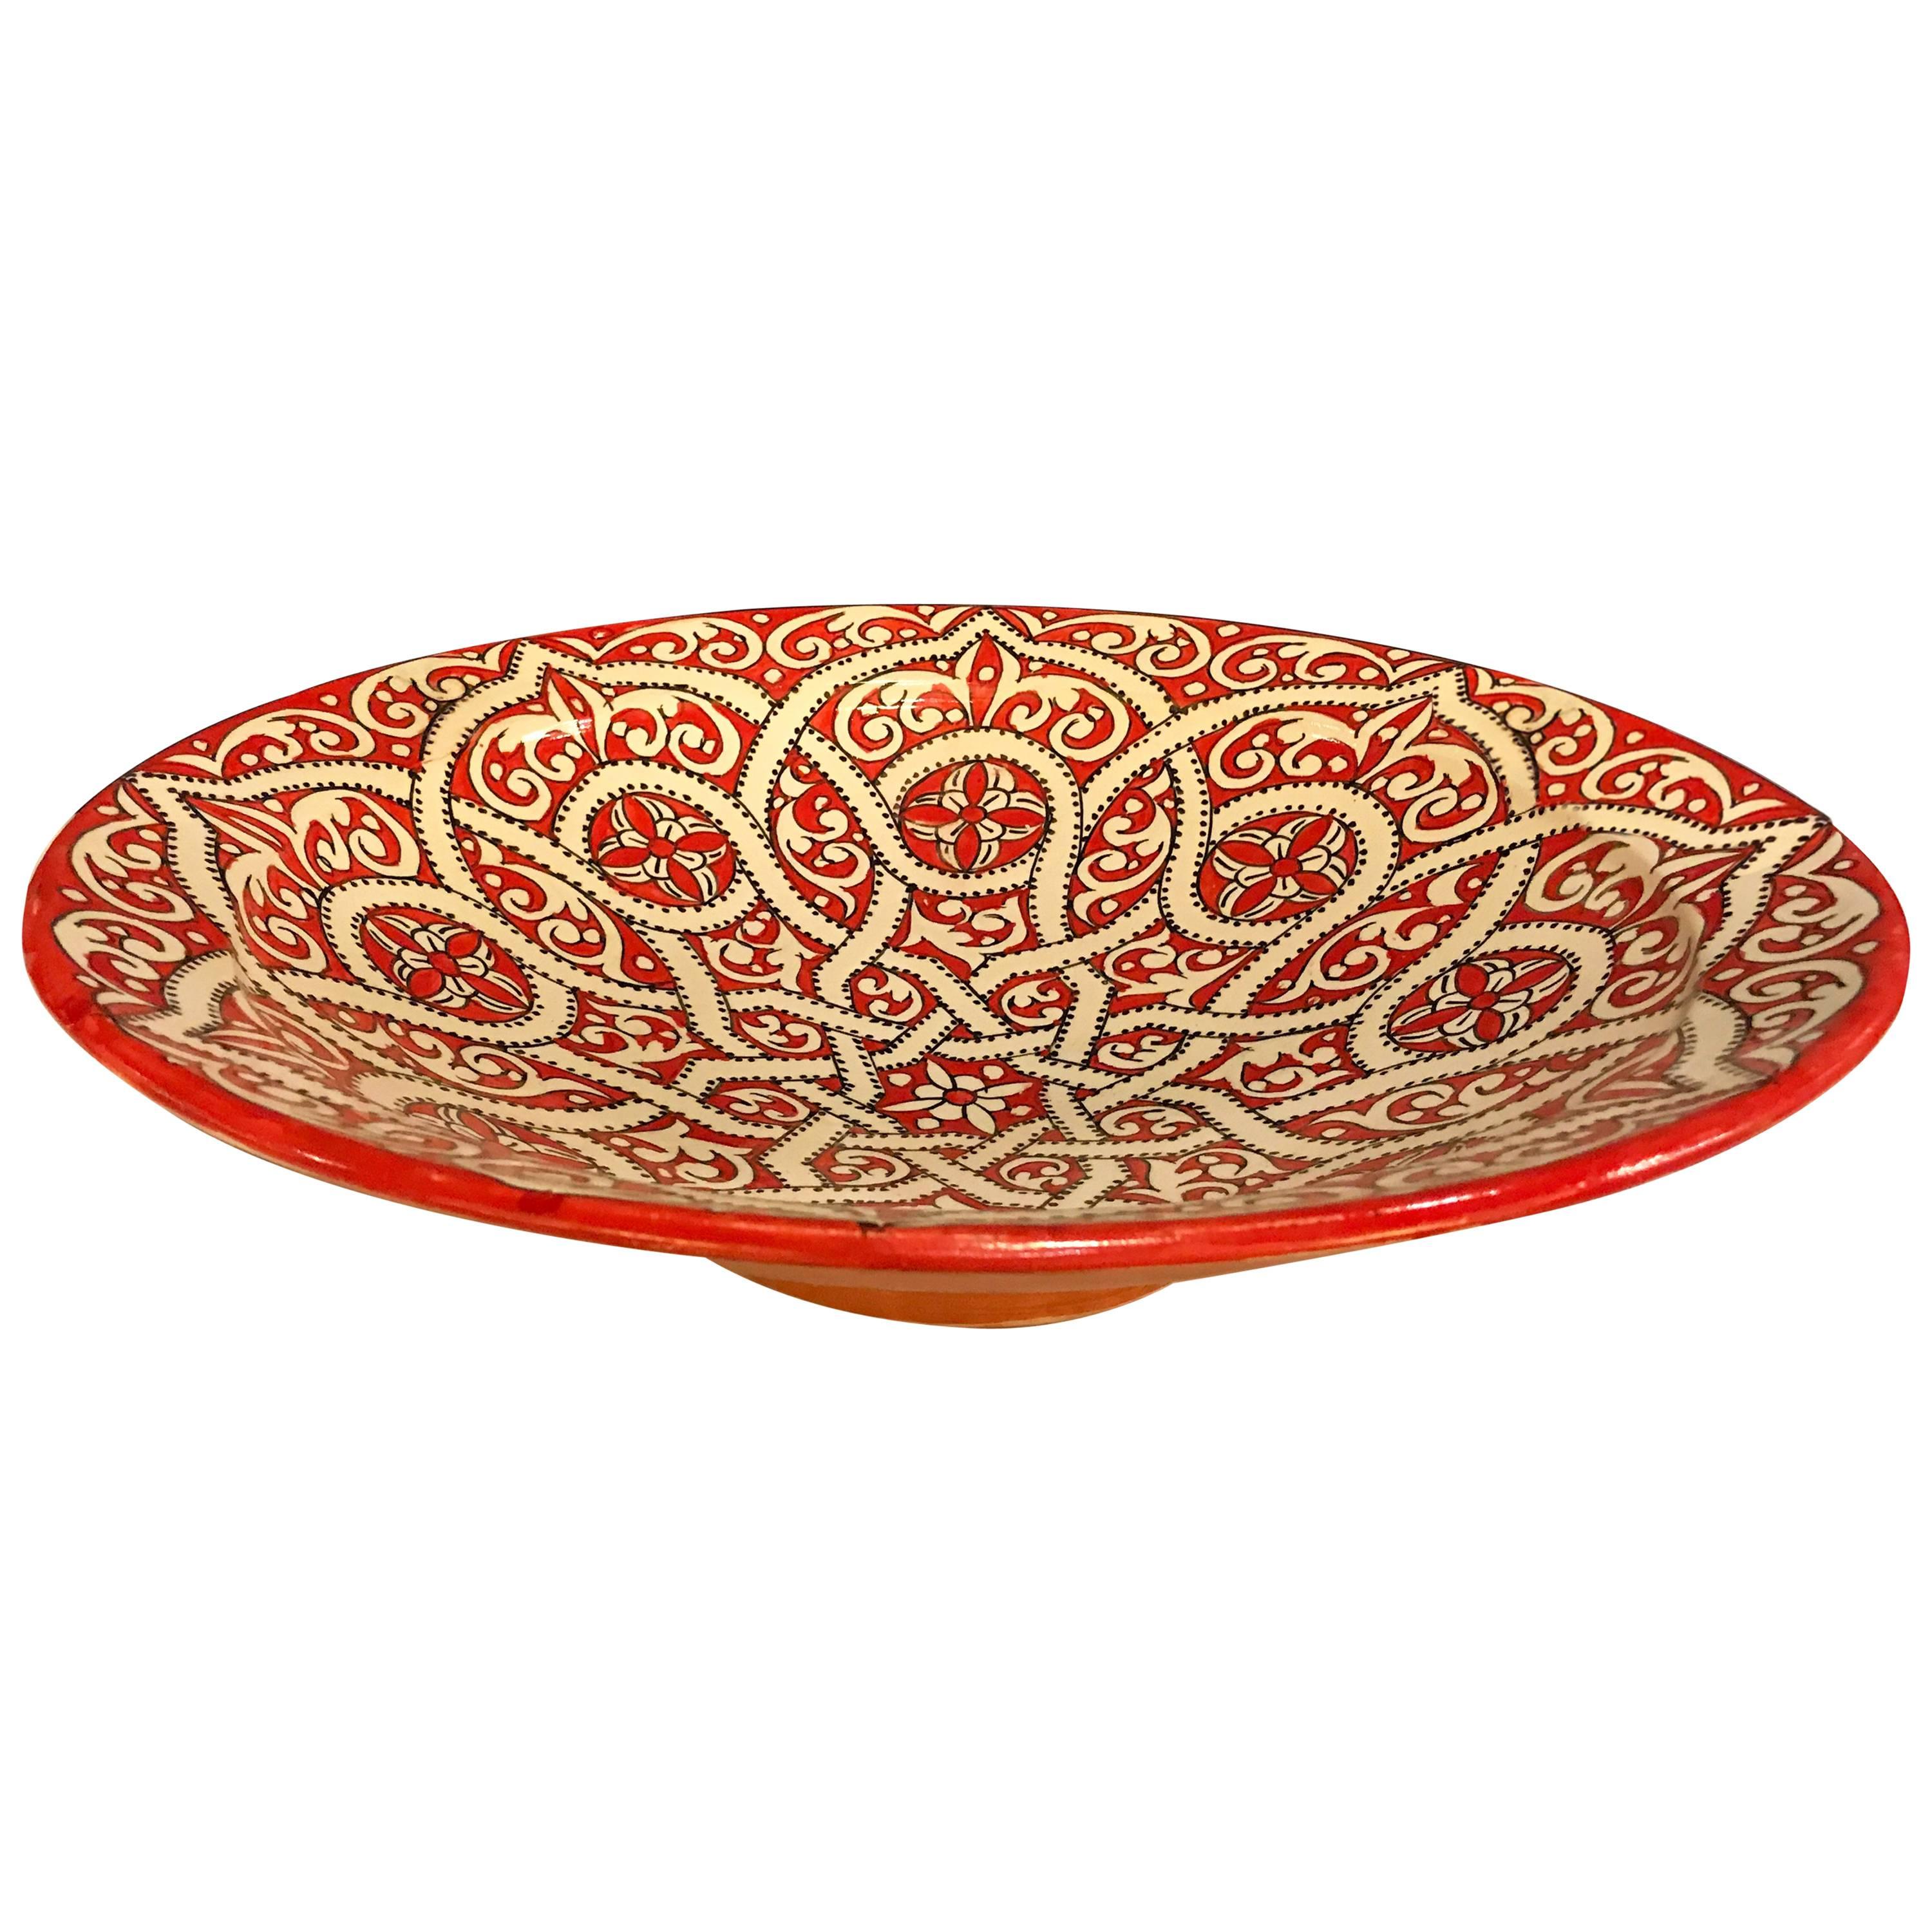 Moroccan Ceramic Plate